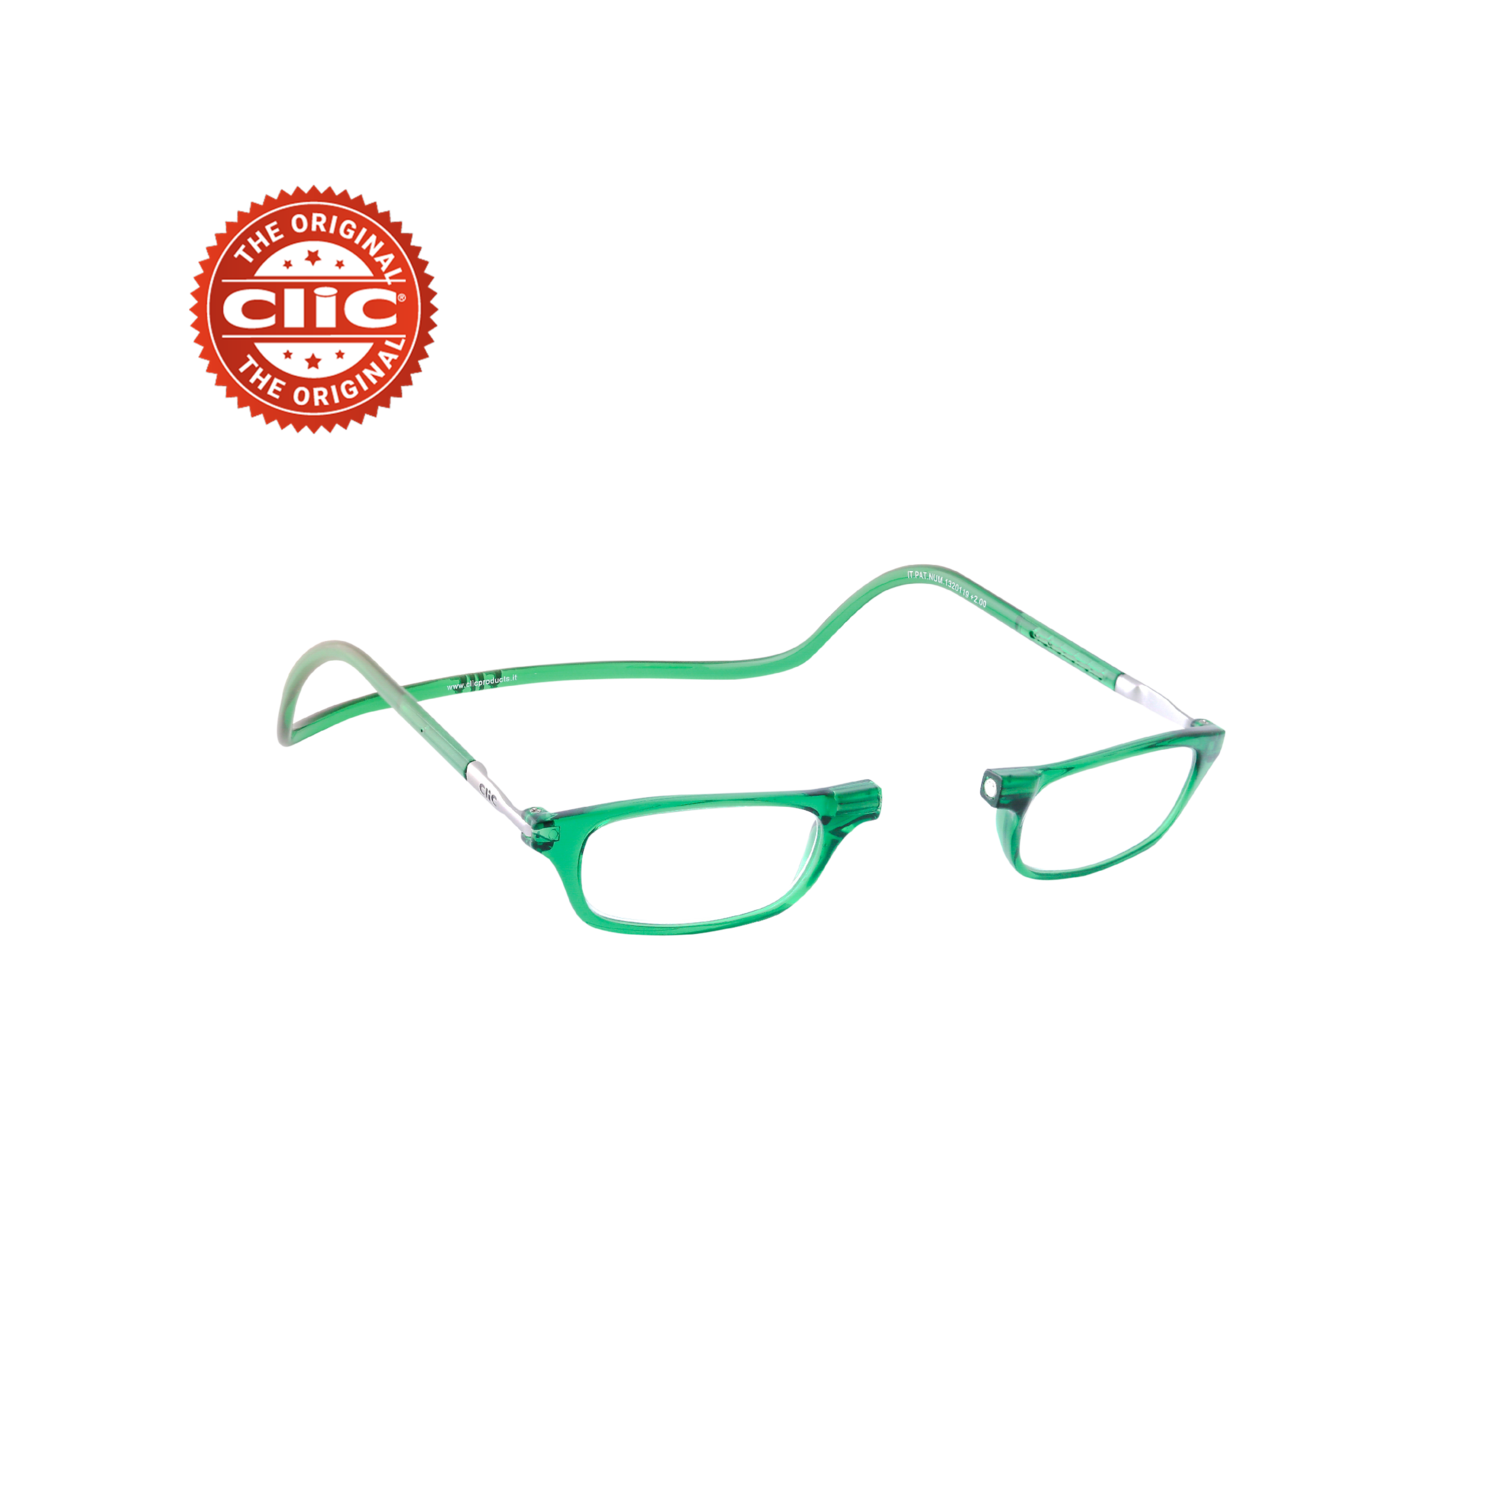 CliC Classic Vision FIT Regular - Gli originali occhiali con calamita